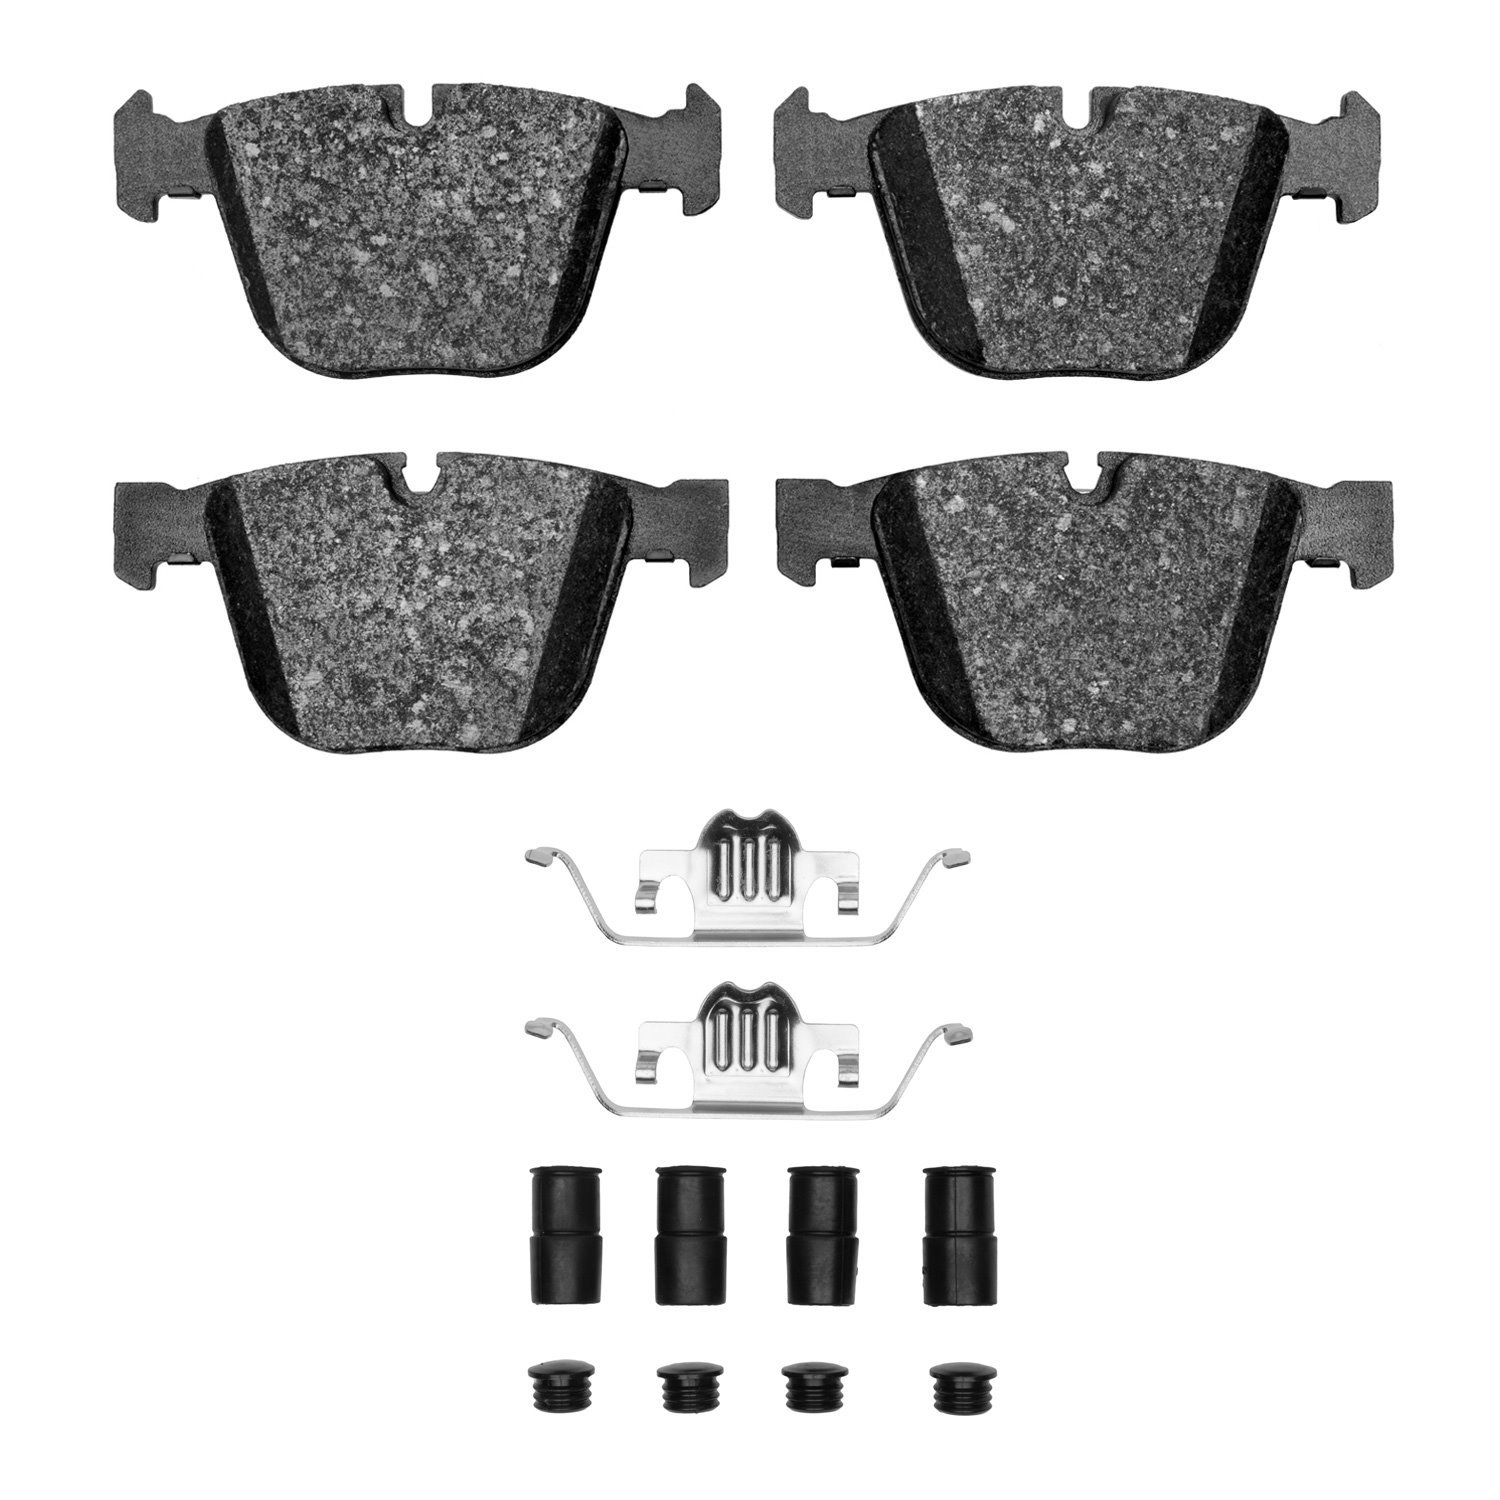 1310-0919-22 3000-Series Ceramic Brake Pads & Hardware Kit, 2010-2019 BMW, Position: Rear